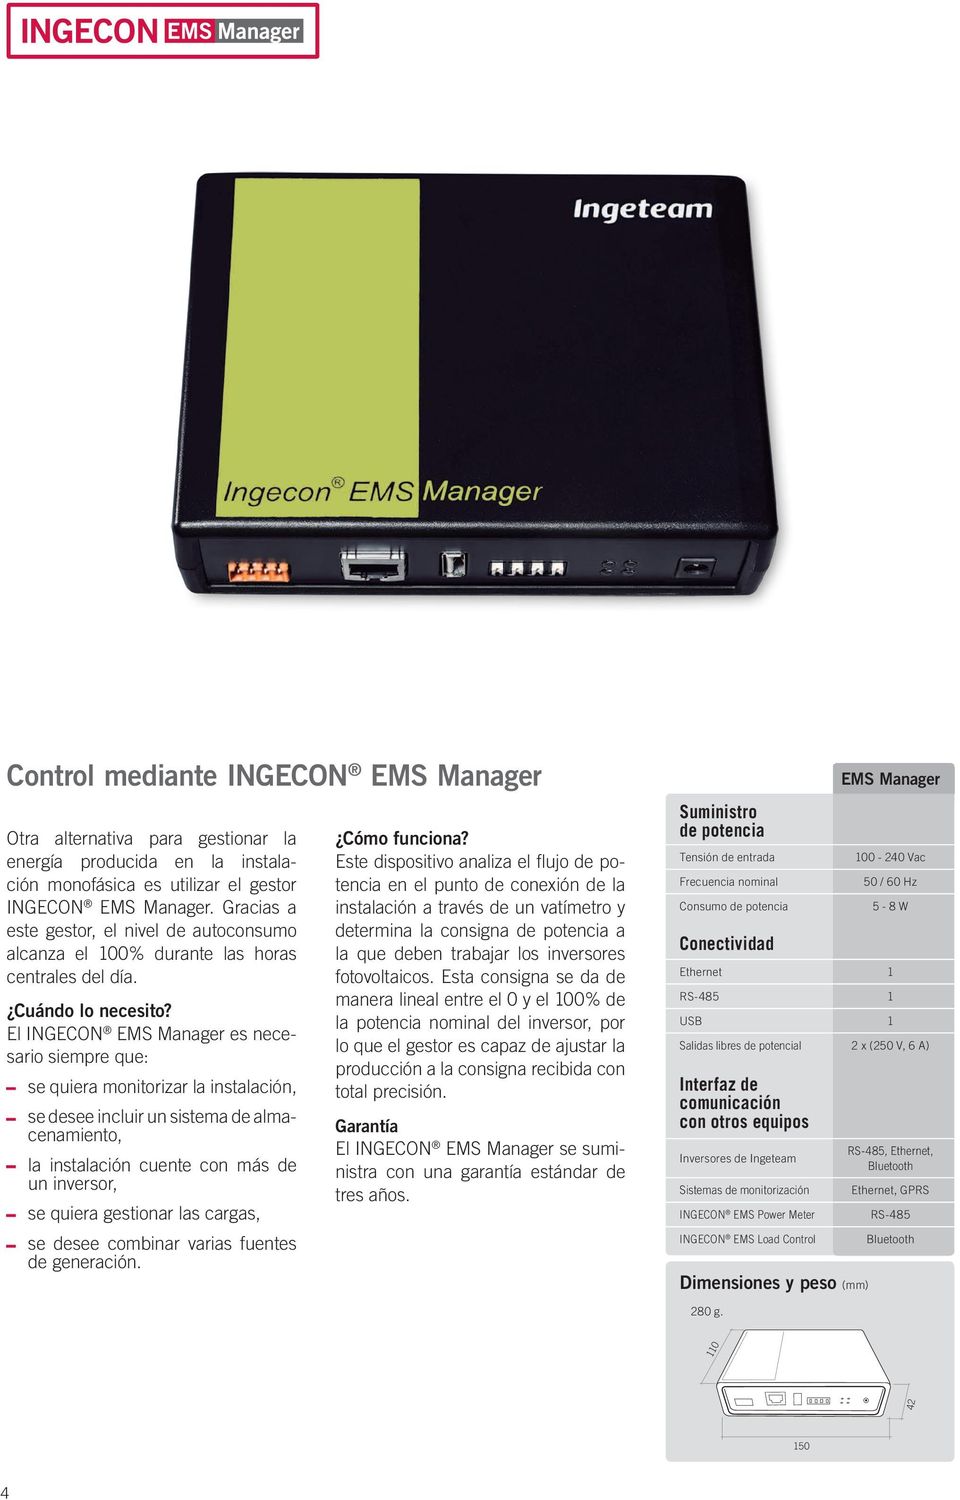 El INGECON EMS Manager es necesario siempre que: se quiera monitorizar la instalación, se desee incluir un sistema de almacenamiento, la instalación cuente con más de un inversor, se quiera gestionar